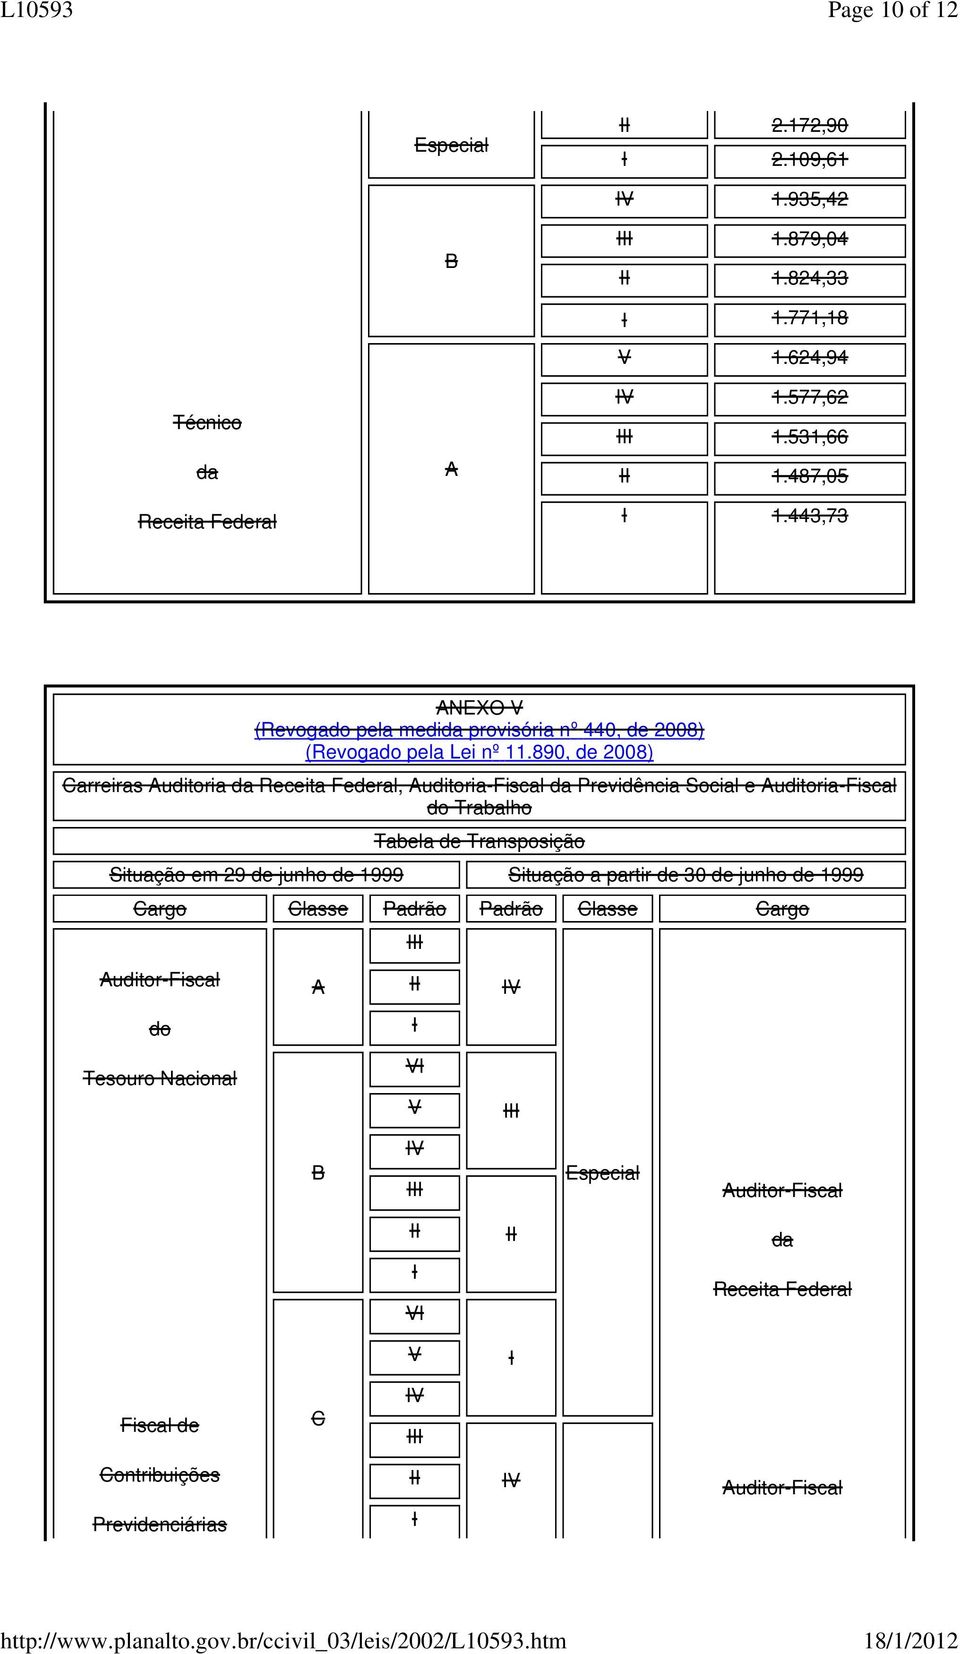 890, de 2008) Carreiras uditoria, uditoria-fiscal Previdência Social e uditoria-fiscal do Trabalho Tabela de Transposição Situação em